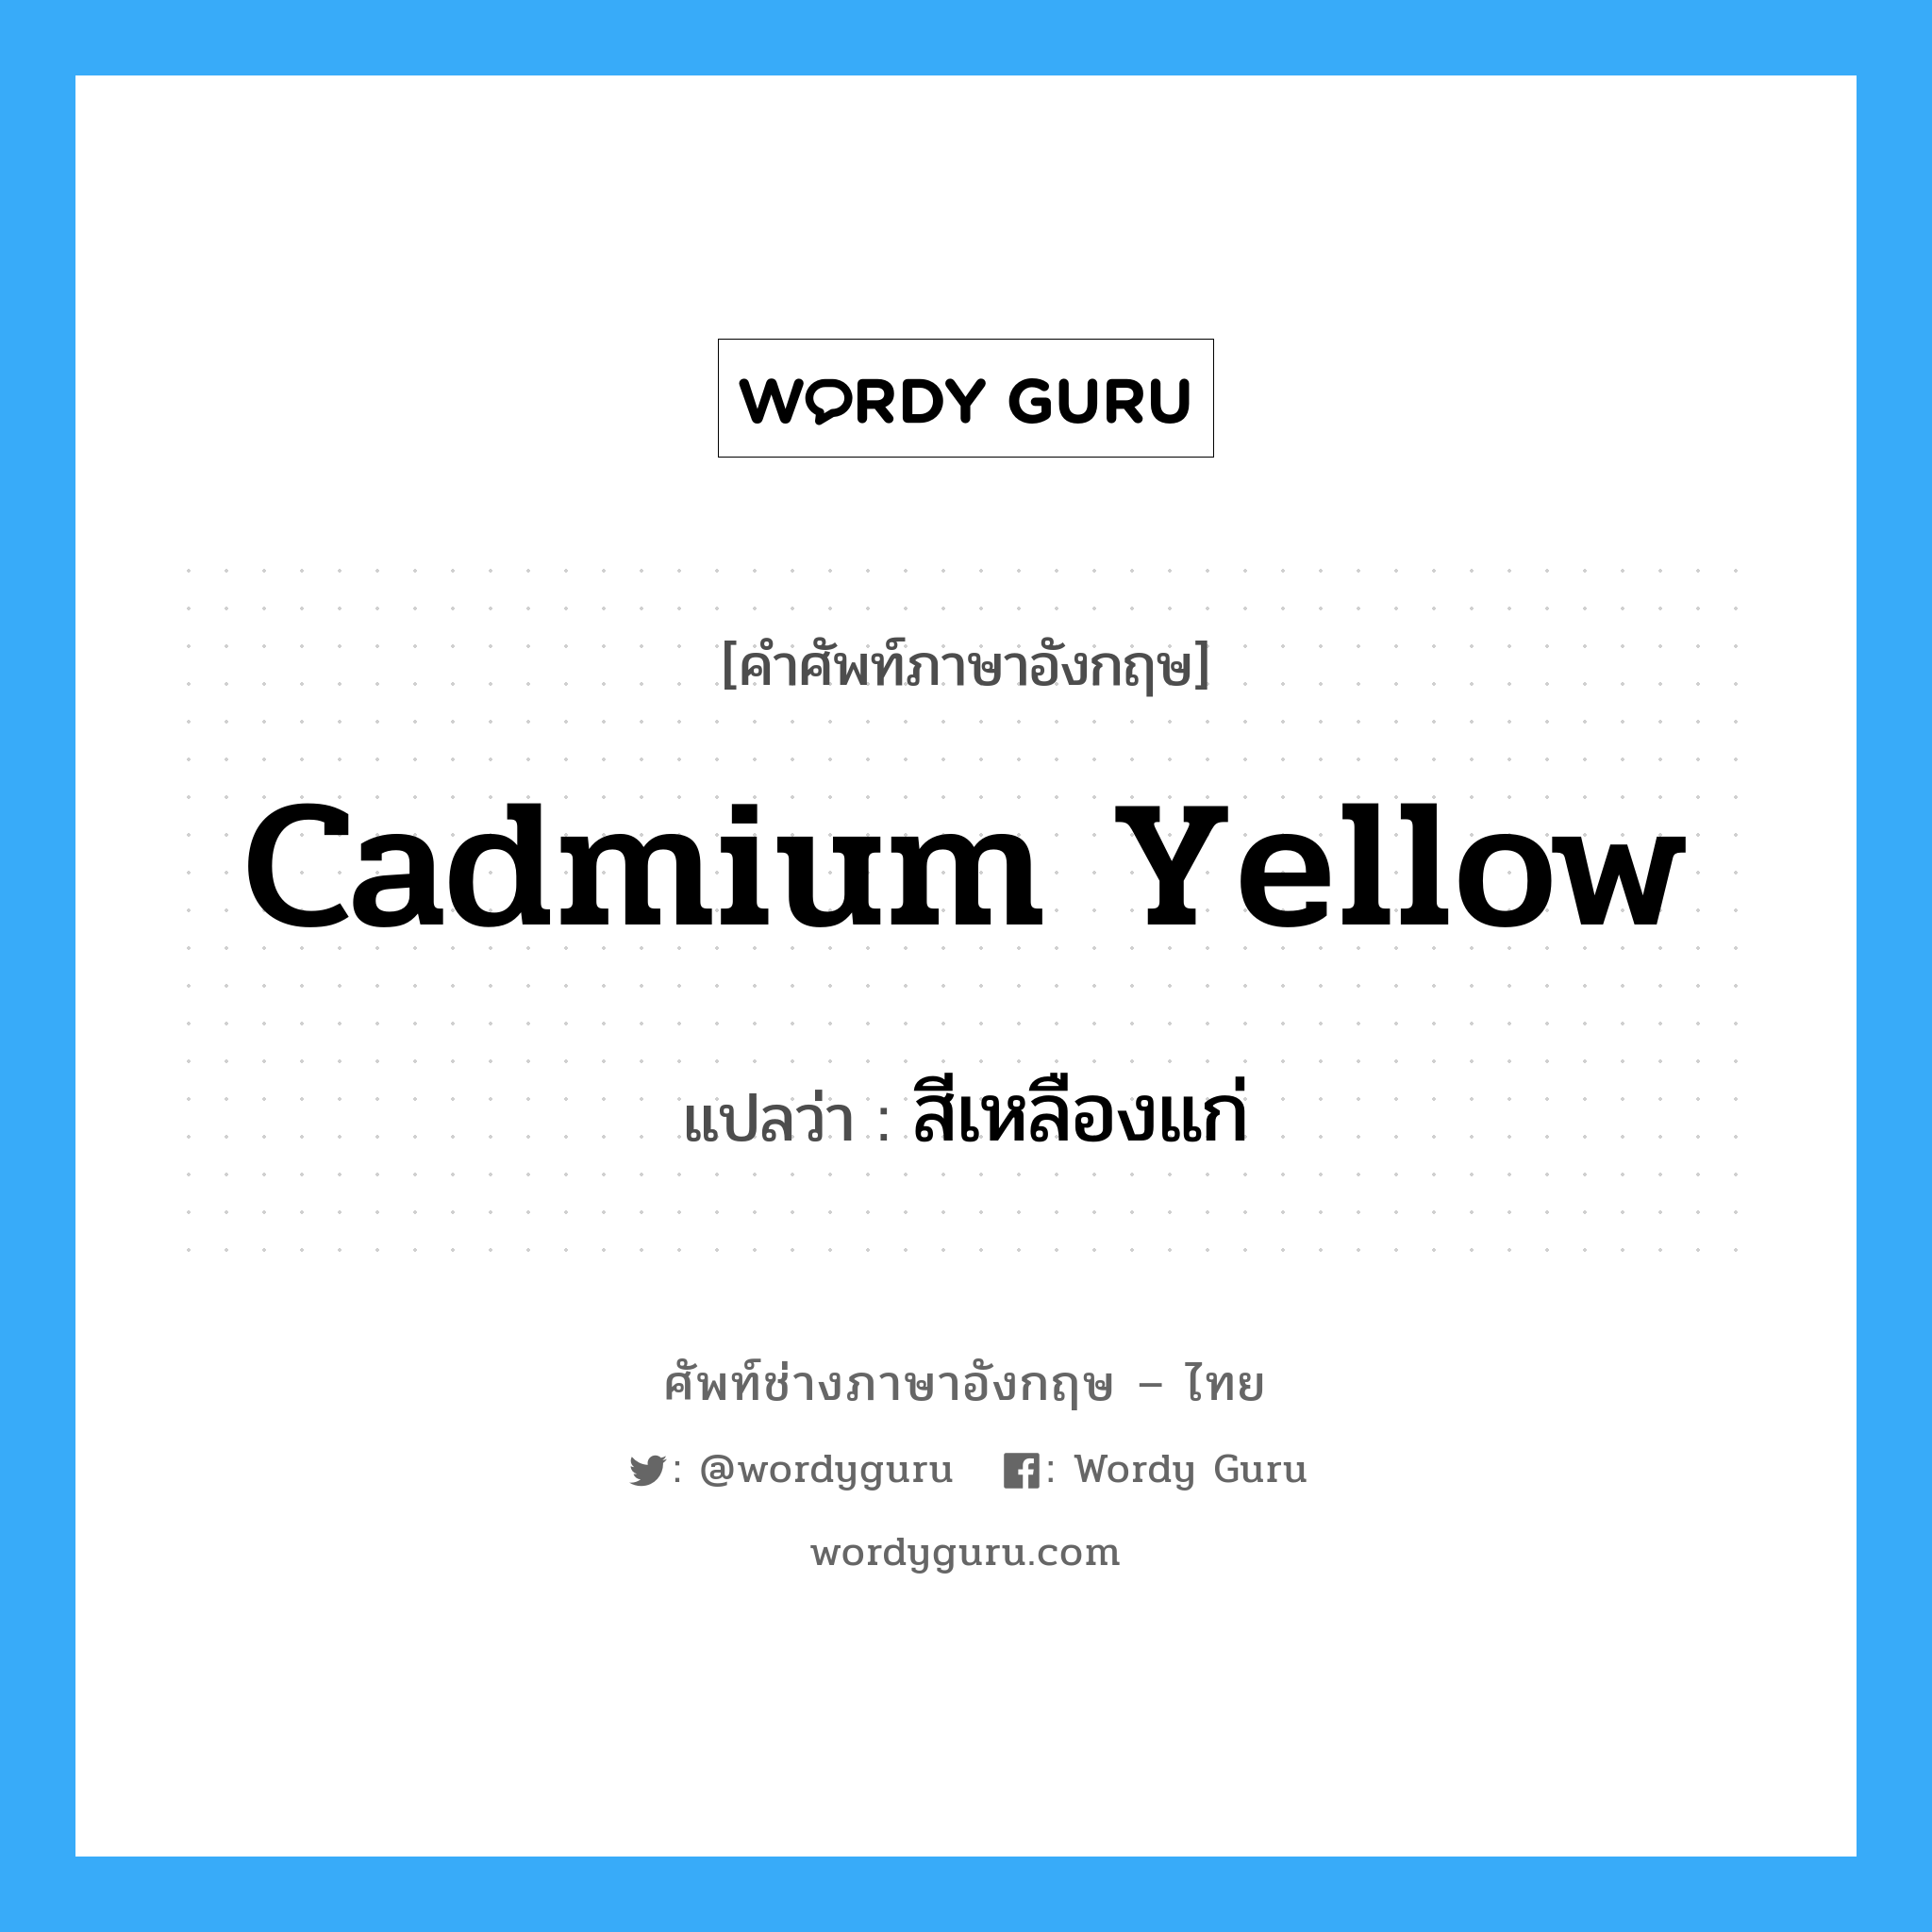 สีเหลืองแก่ ภาษาอังกฤษ?, คำศัพท์ช่างภาษาอังกฤษ - ไทย สีเหลืองแก่ คำศัพท์ภาษาอังกฤษ สีเหลืองแก่ แปลว่า cadmium yellow